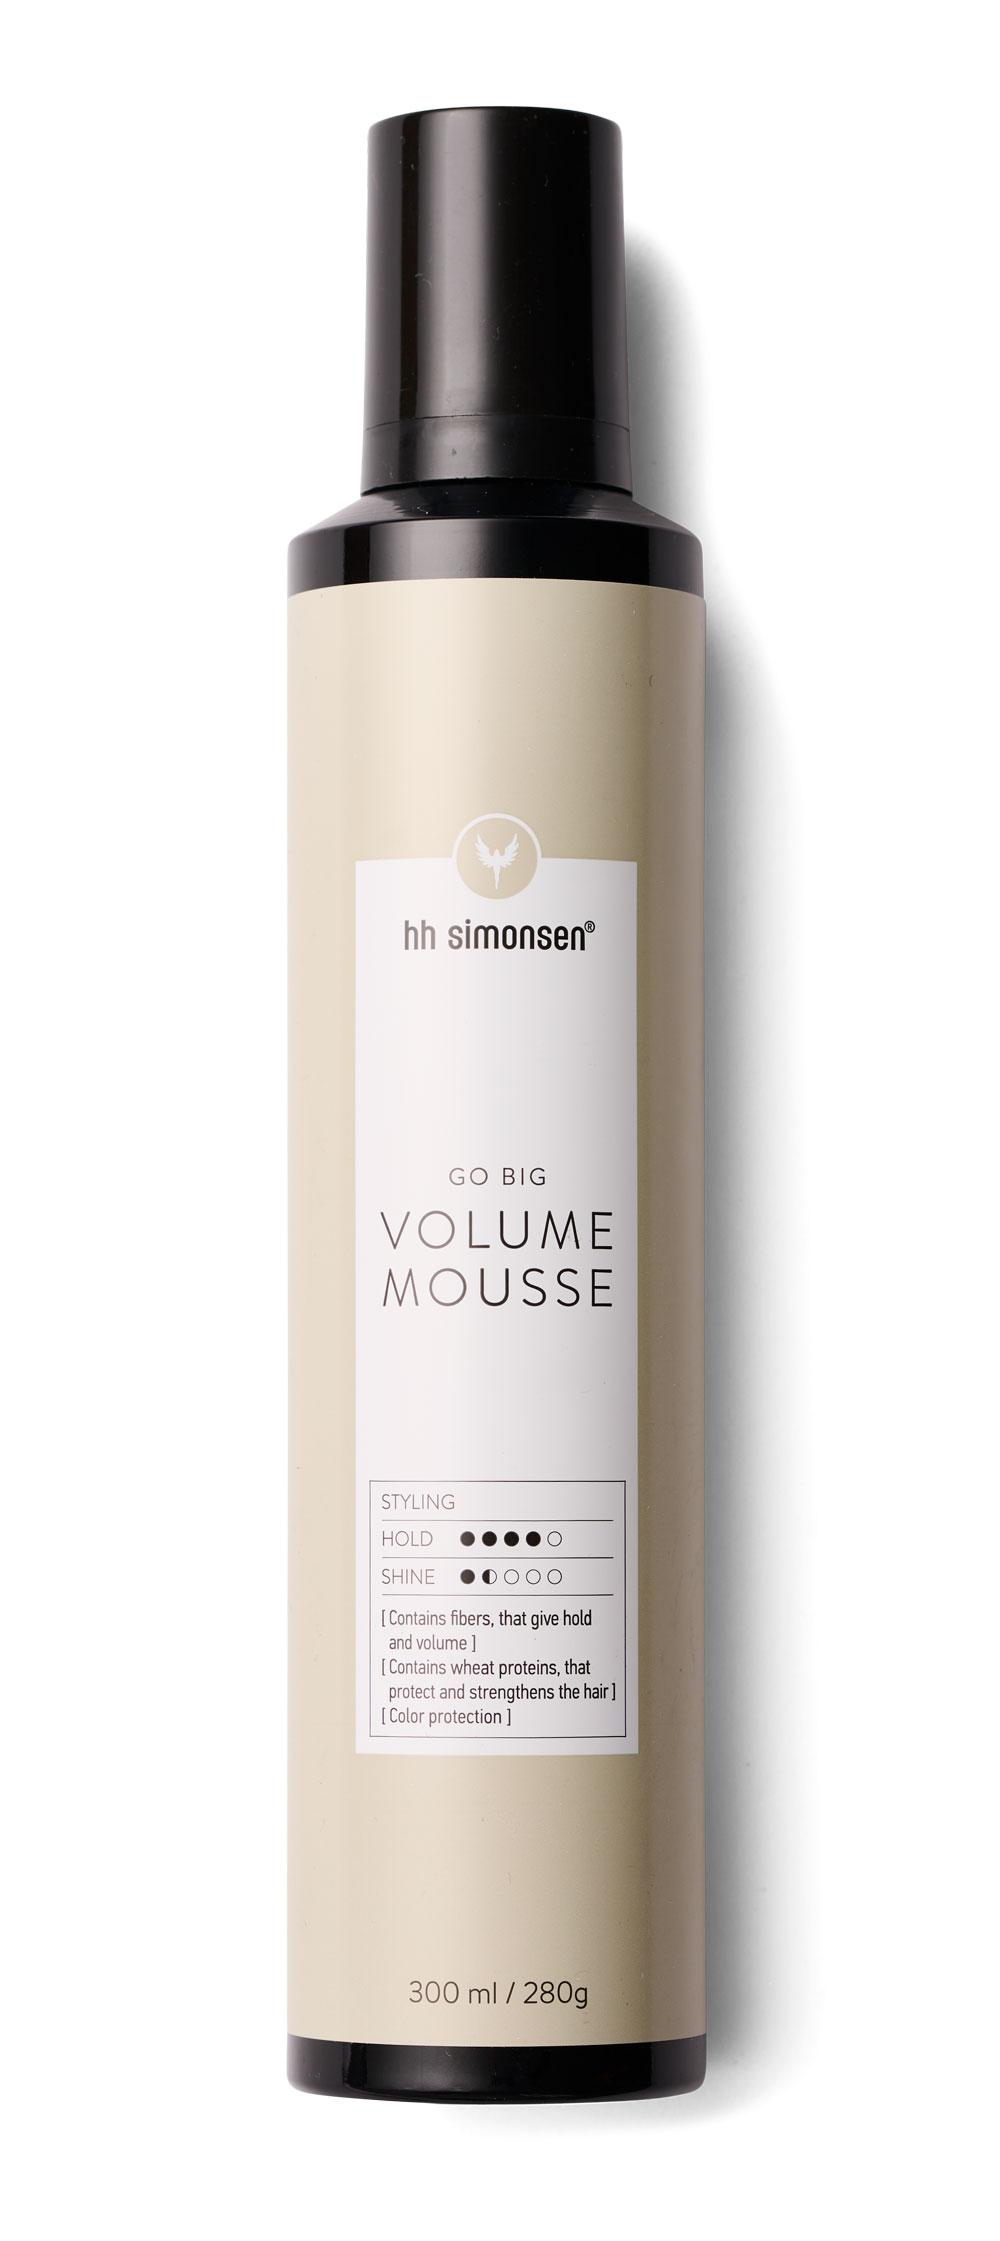 HH Simonsen Volume Mousse, 300 ml